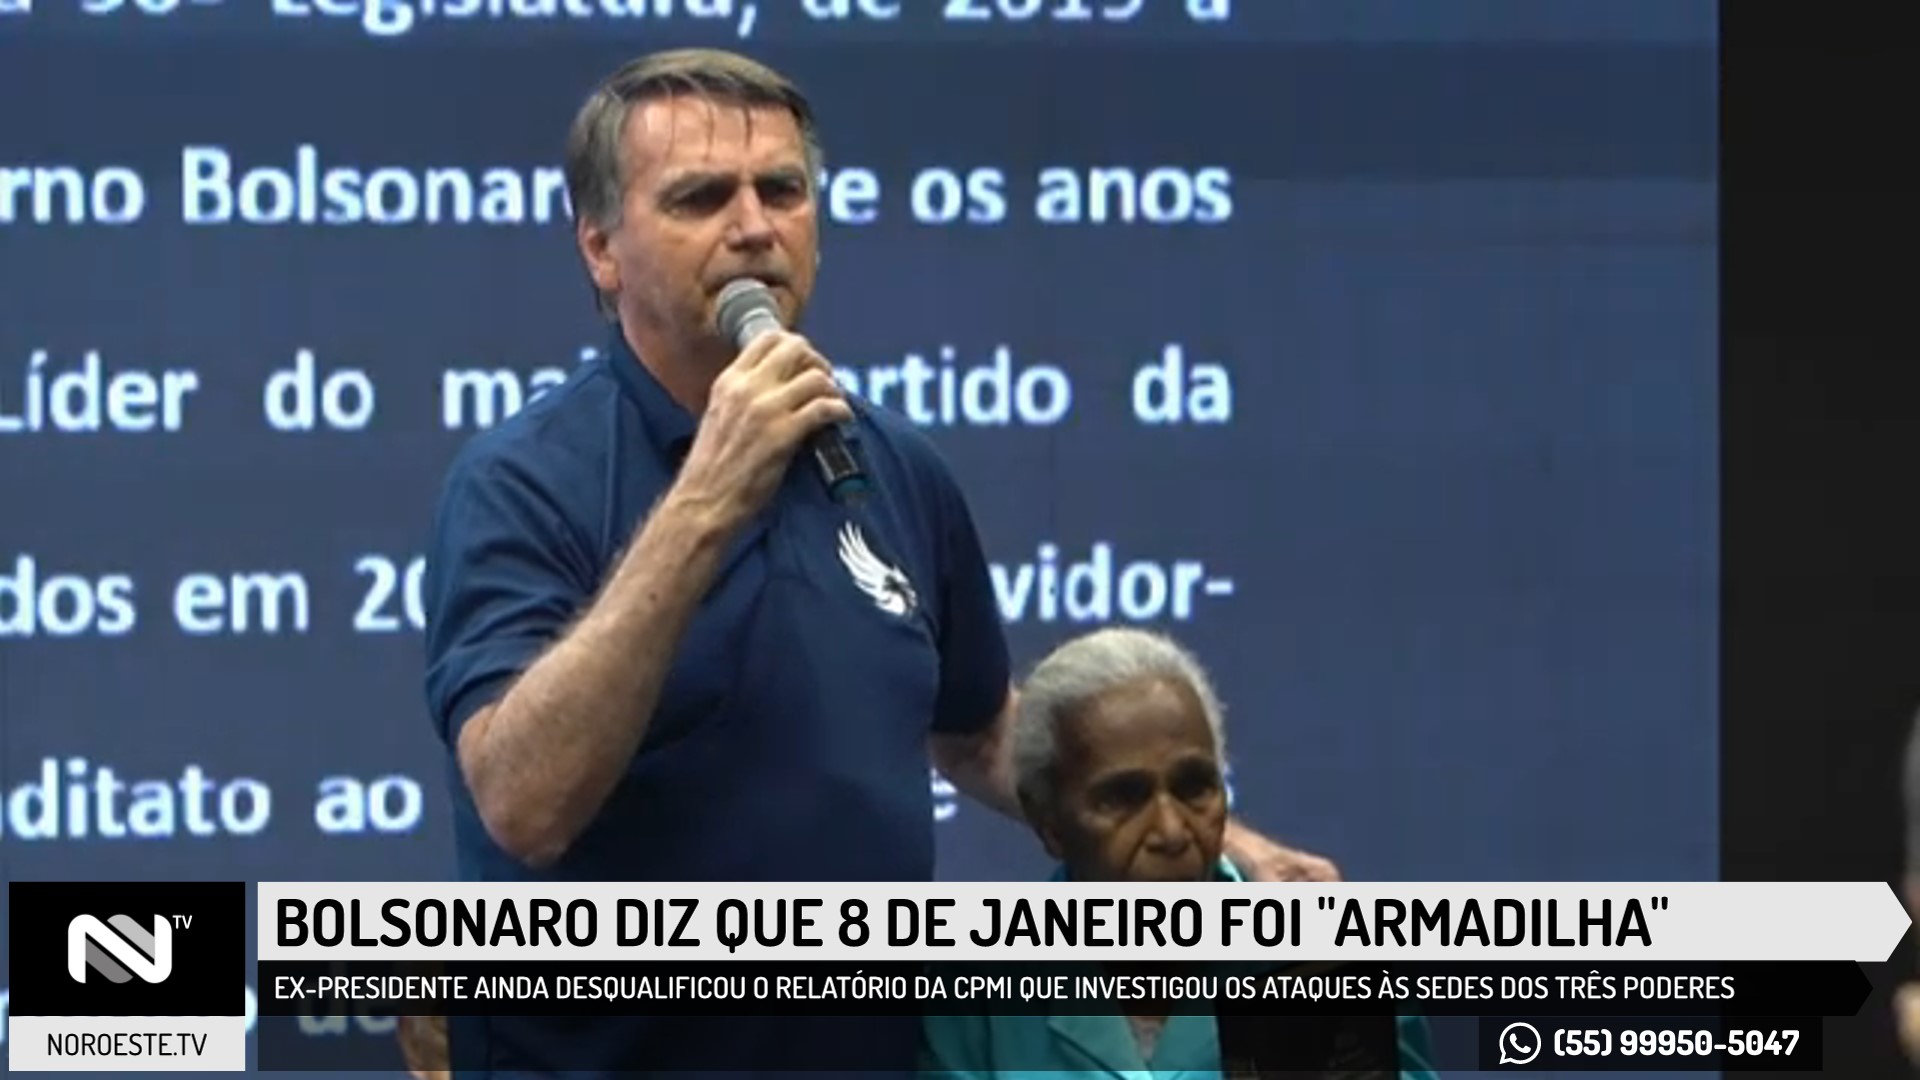 Bolsonaro diz que 8 de janeiro foi (armadilha)